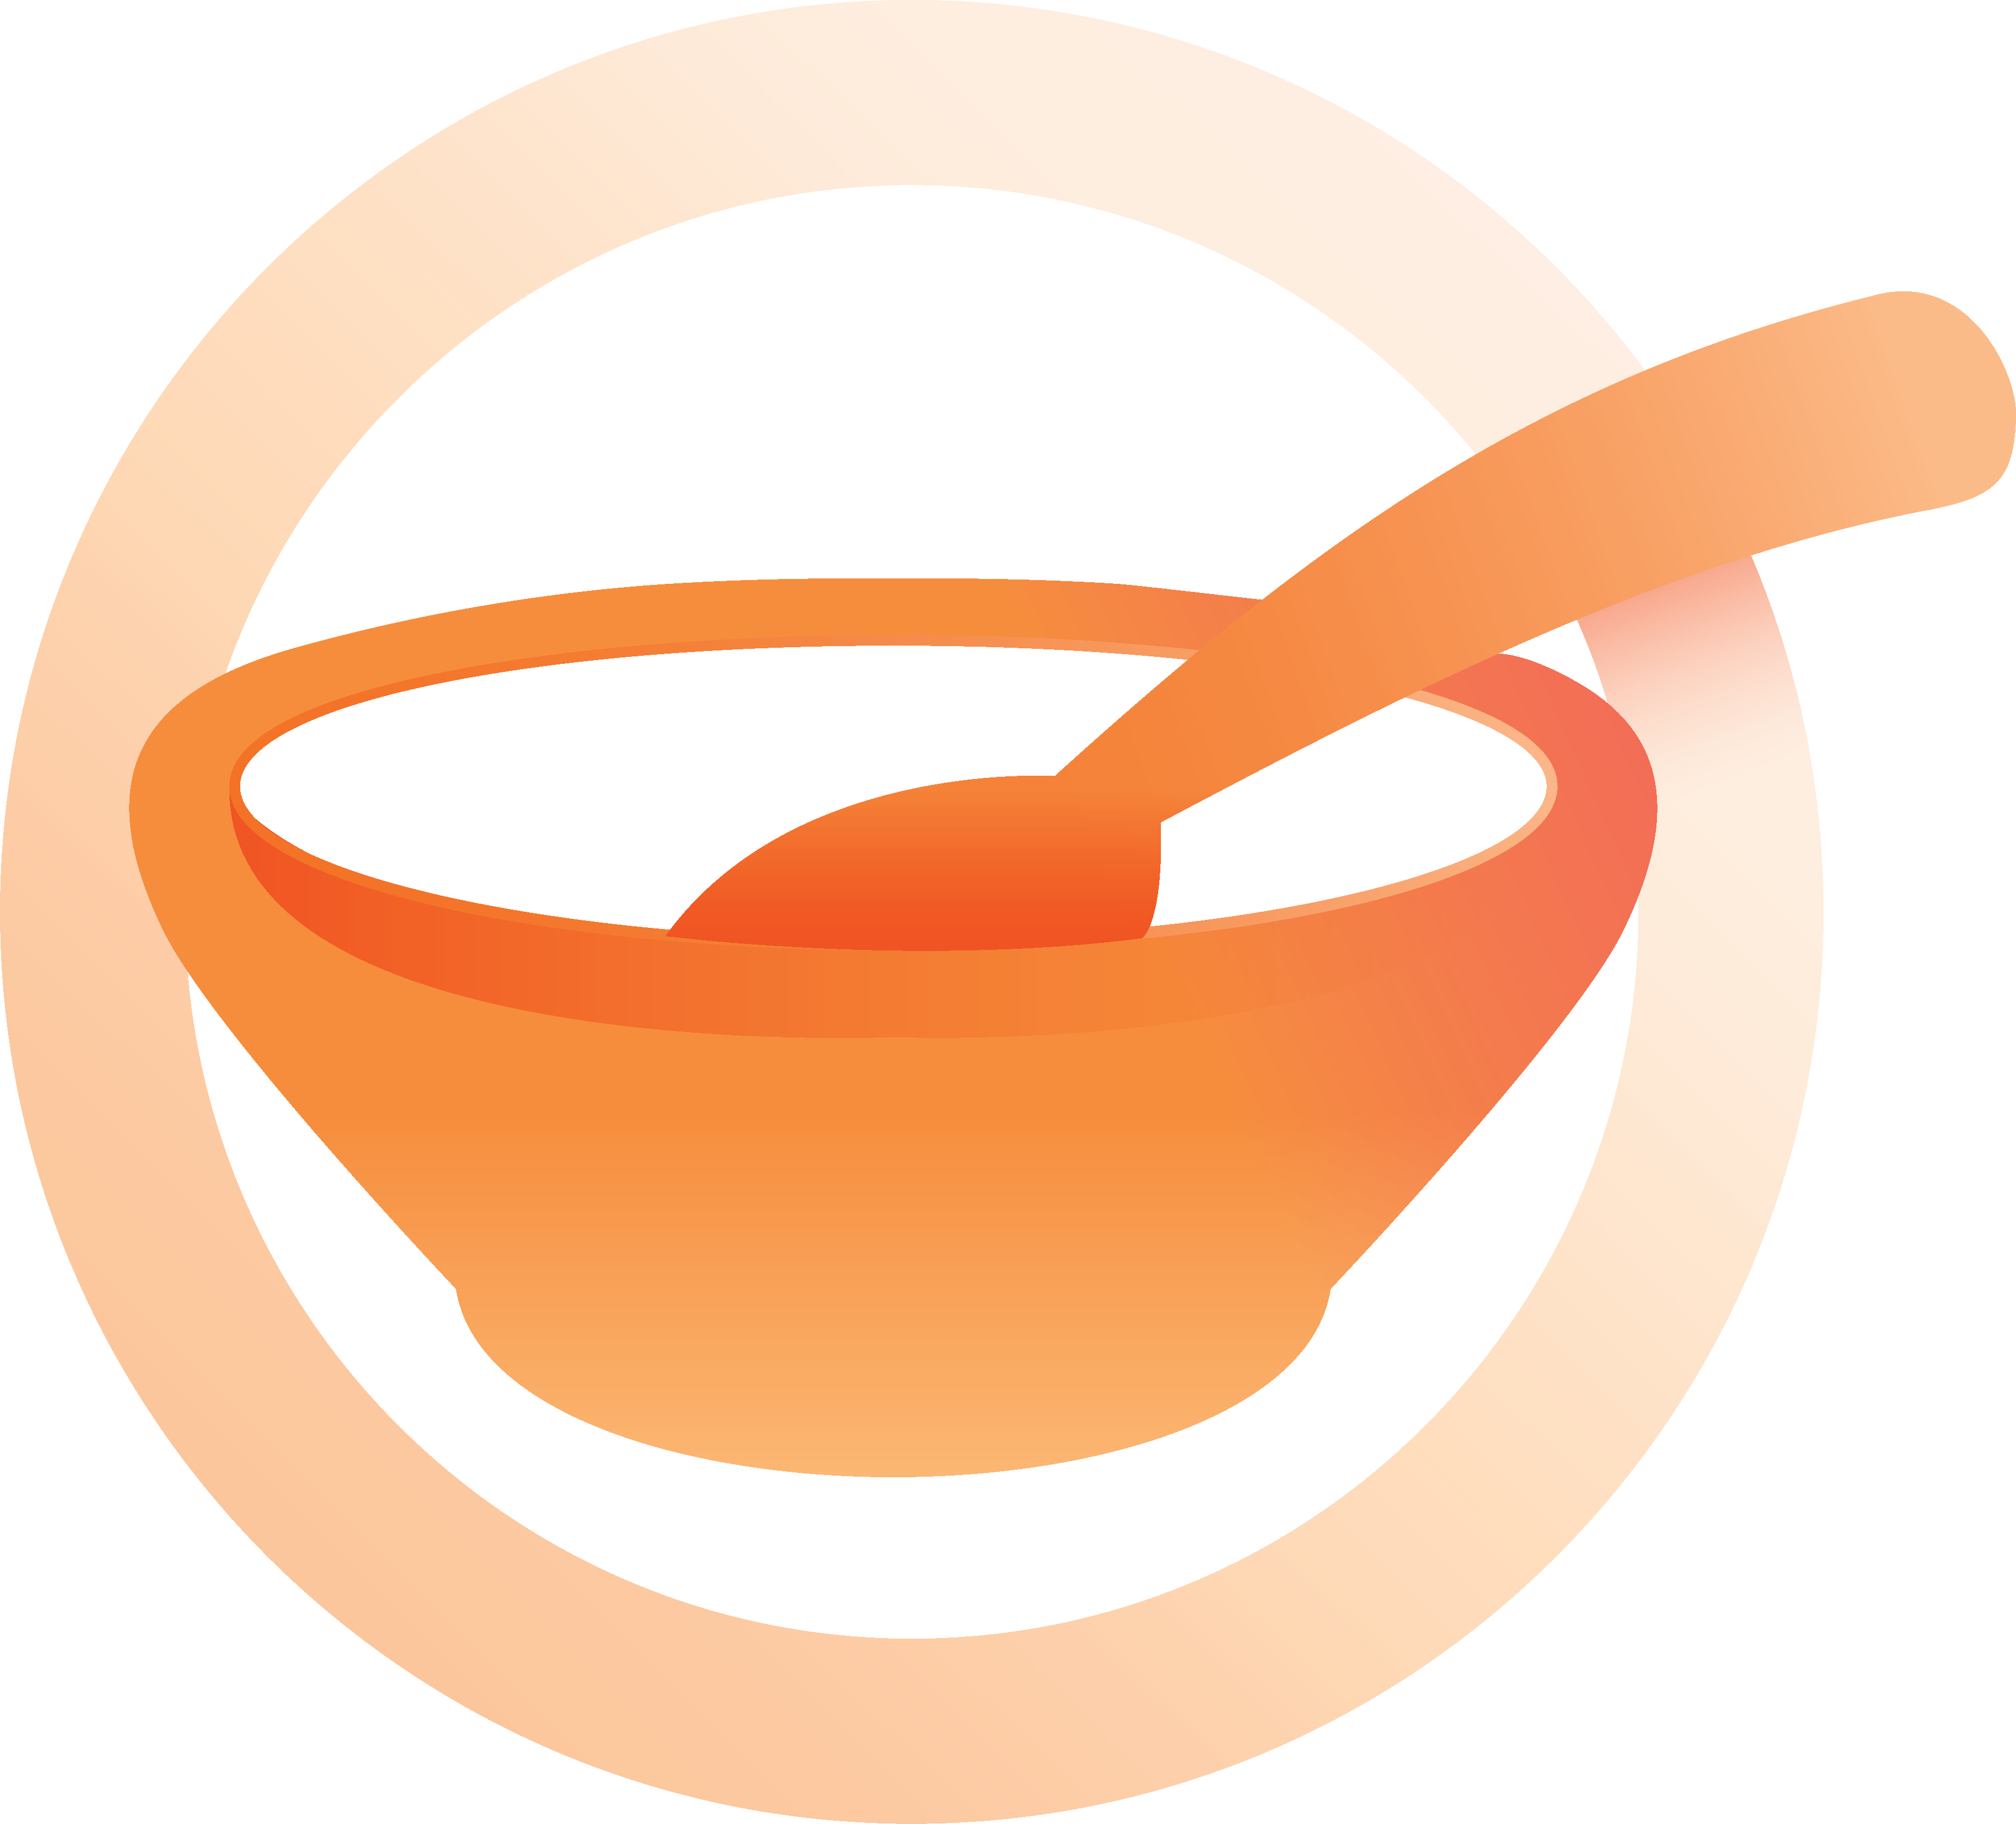 Hunger logo